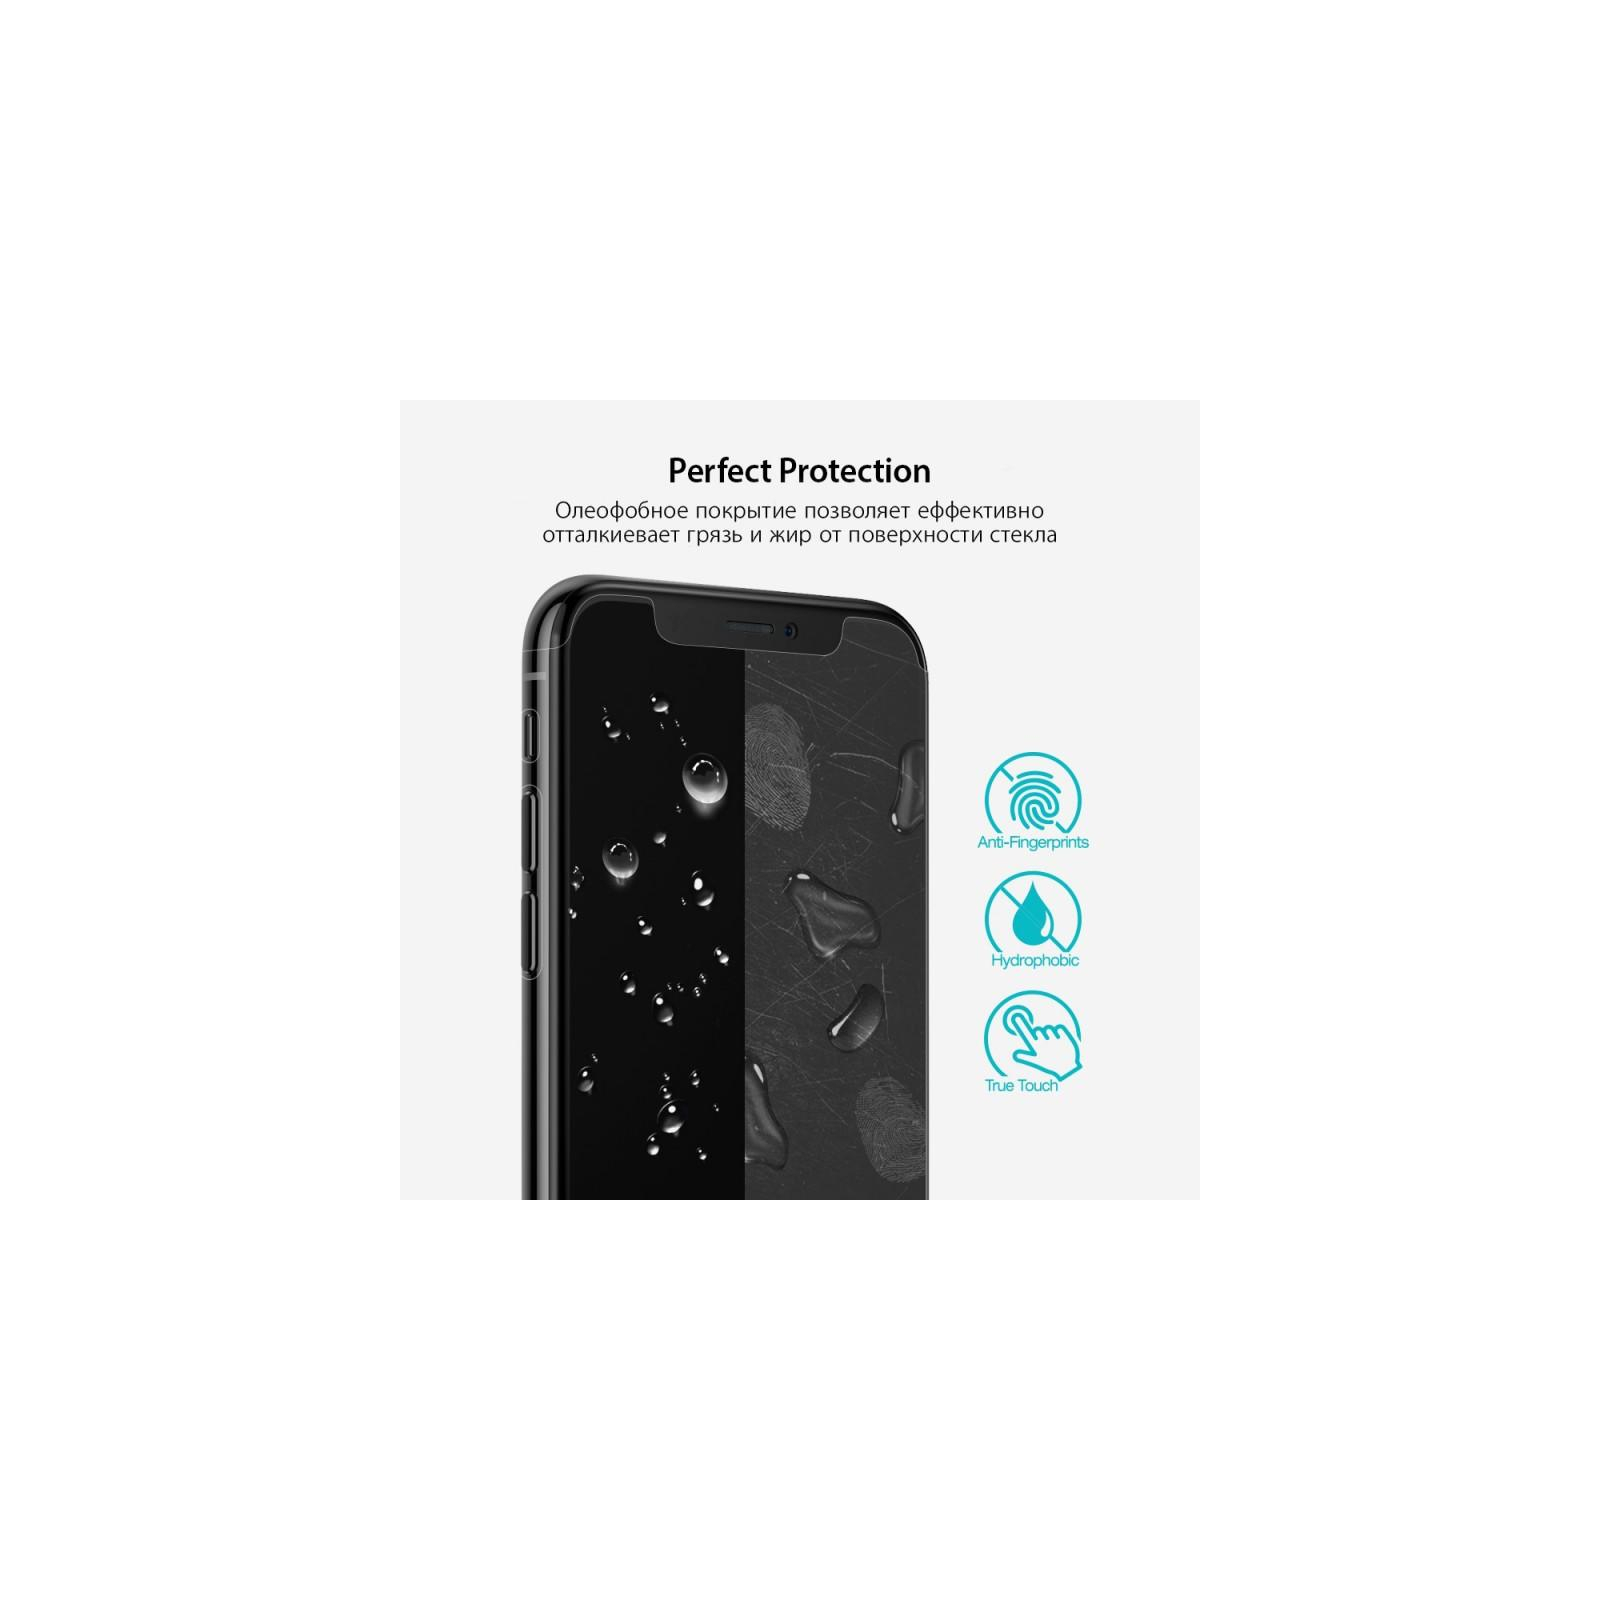 Пленка защитная Ringke для телефона Apple iPhone X /XS Full Cover (RSP4502) изображение 4